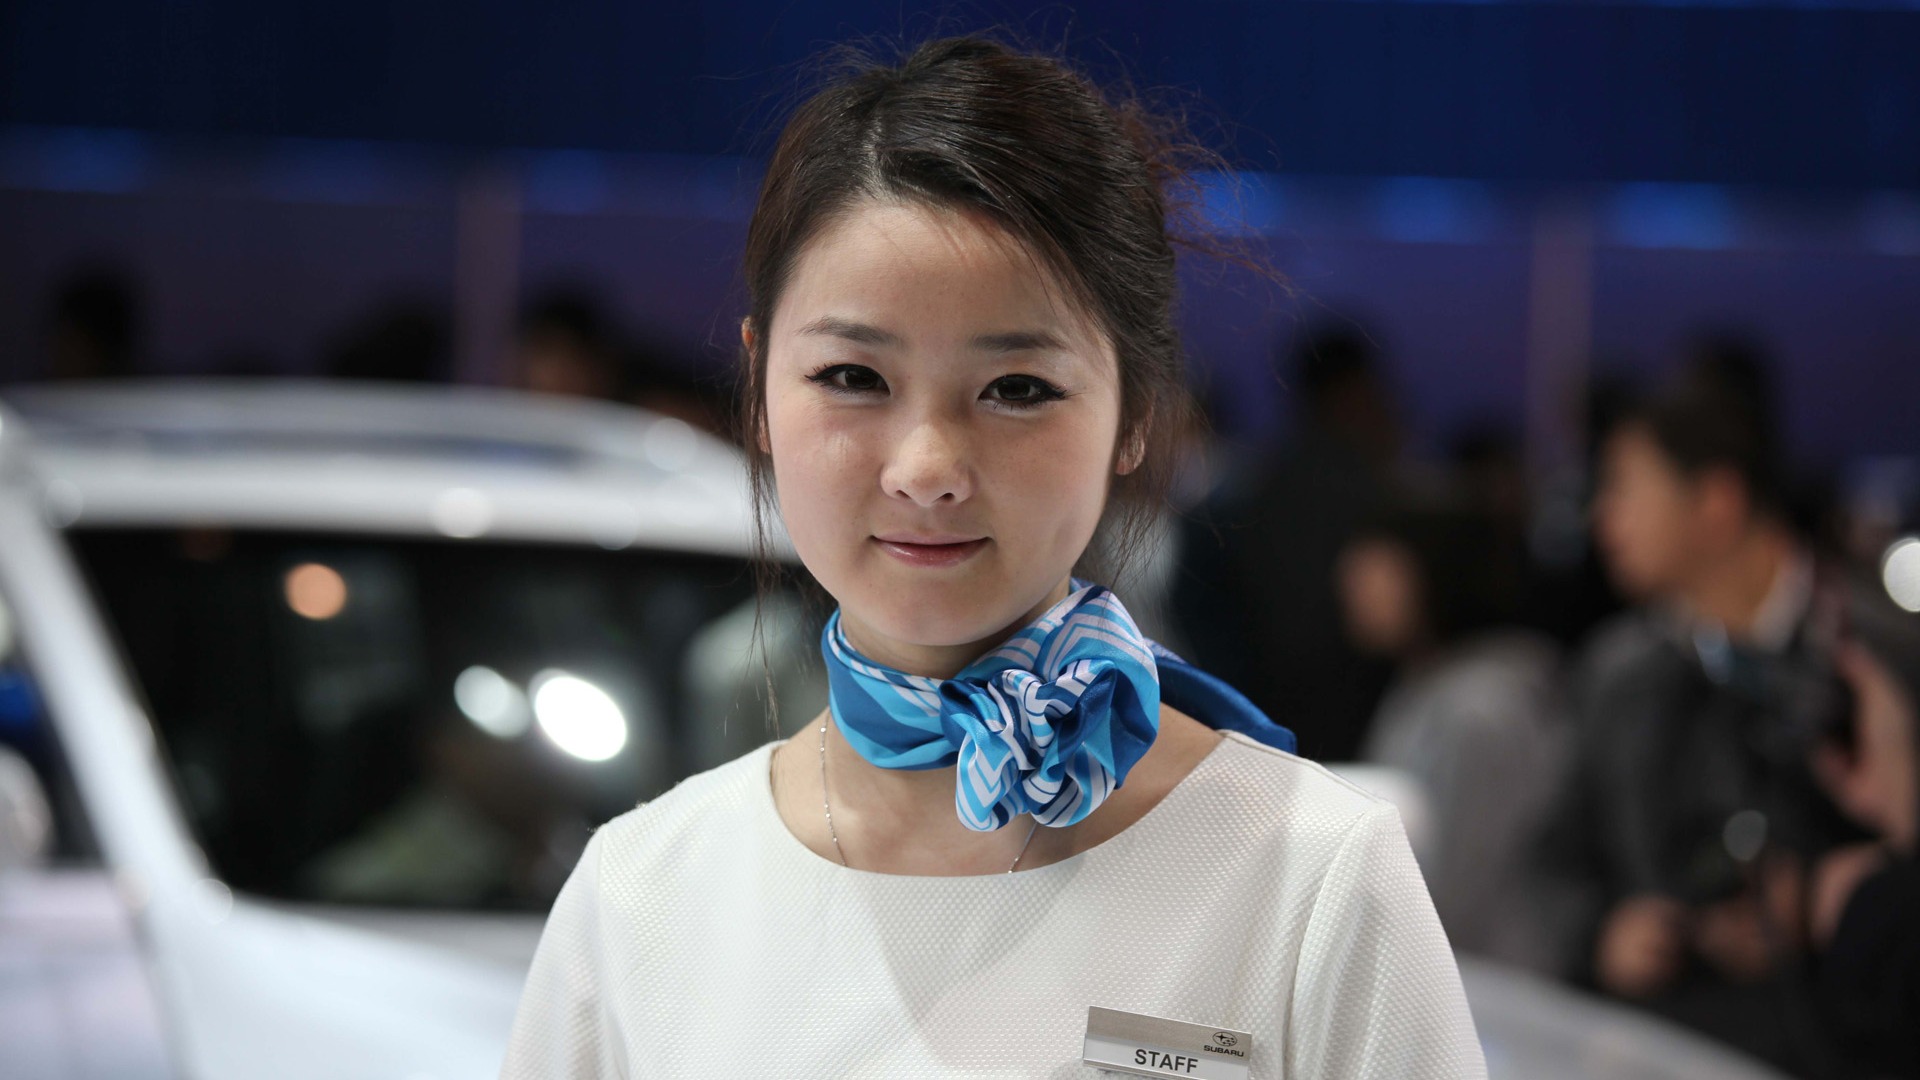 2010 Beijing International Auto Show de beauté (1) (le vent chasse les nuages de travaux) #22 - 1920x1080